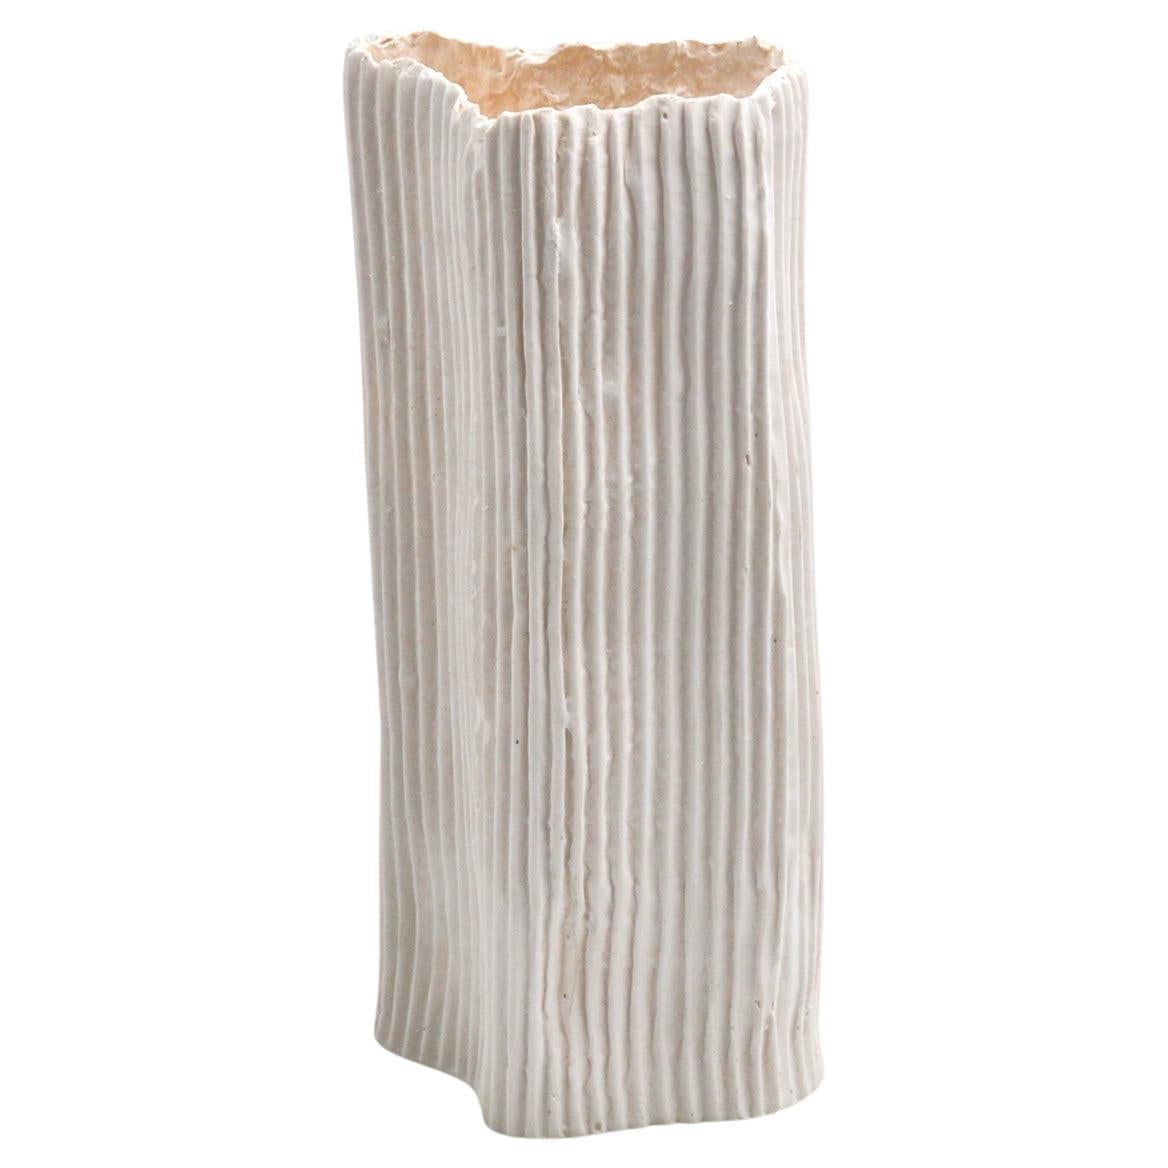 VASO IN  PORCELLANA E PAPERCLAY  texture bianca a onde in rilievo #2 di 3 vasi  For Sale